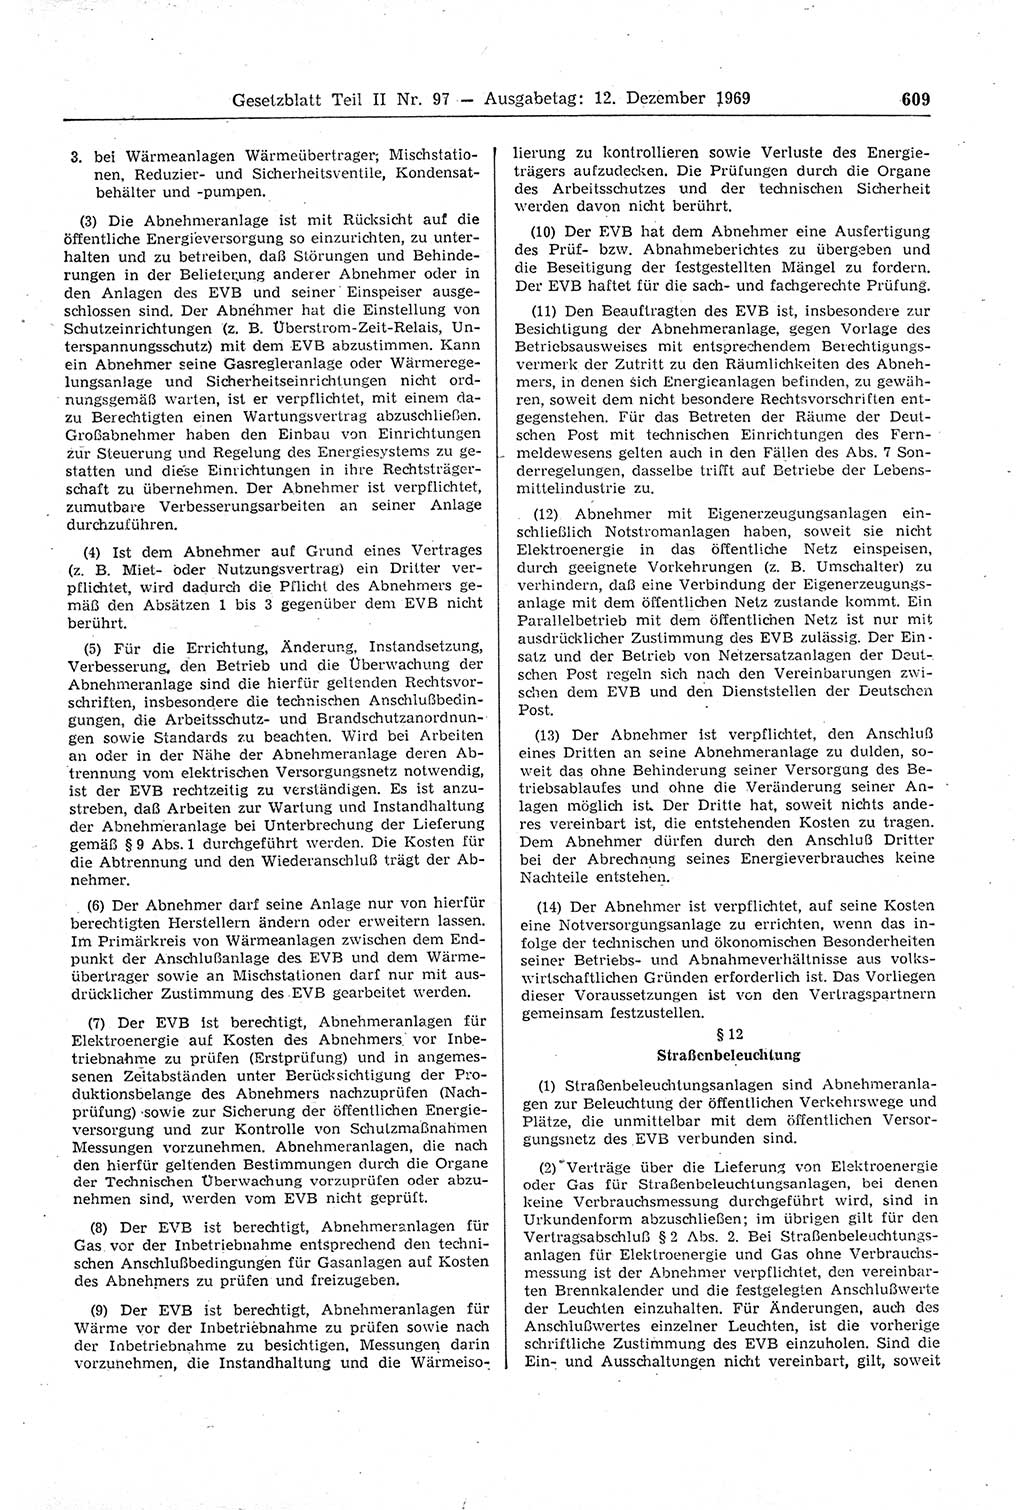 Gesetzblatt (GBl.) der Deutschen Demokratischen Republik (DDR) Teil ⅠⅠ 1969, Seite 609 (GBl. DDR ⅠⅠ 1969, S. 609)